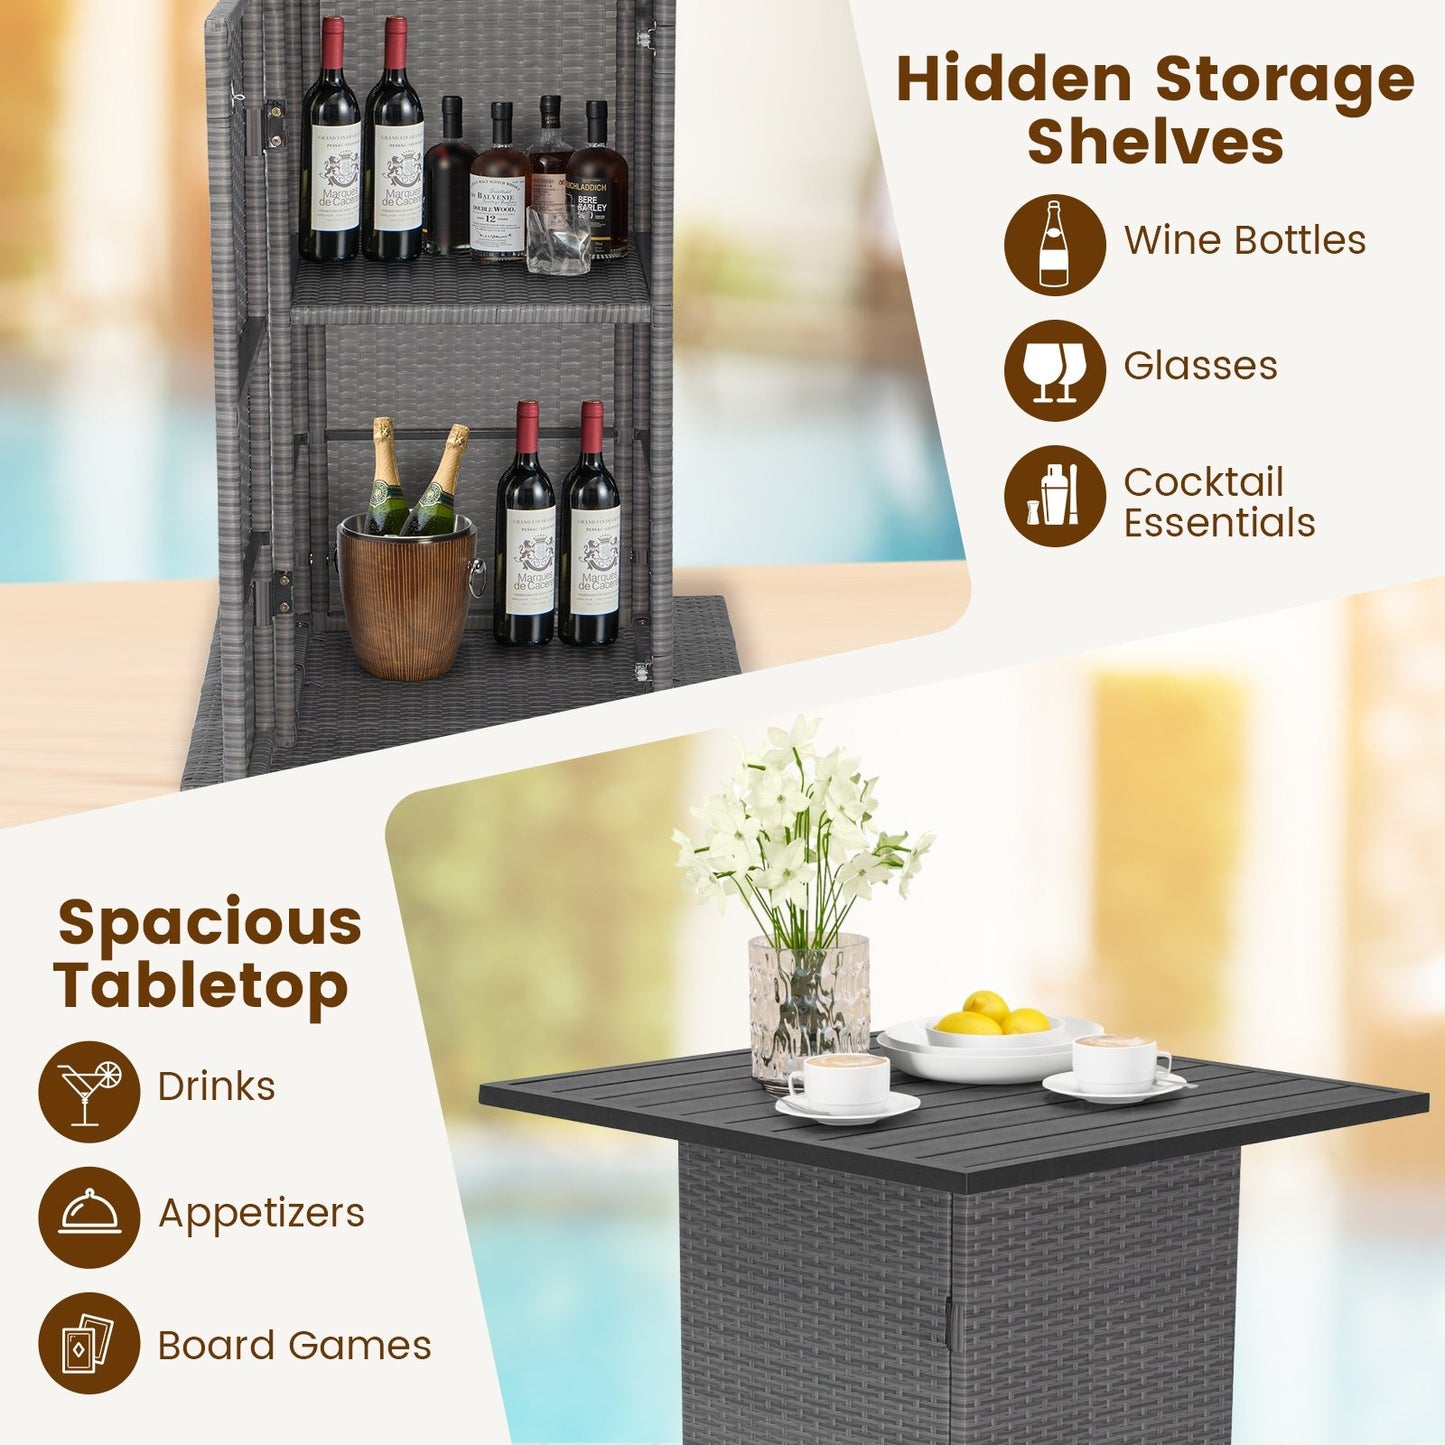 5 Pieces Outdoor Wicker Bar Table Set with Hidden Storage Shelves, Beige